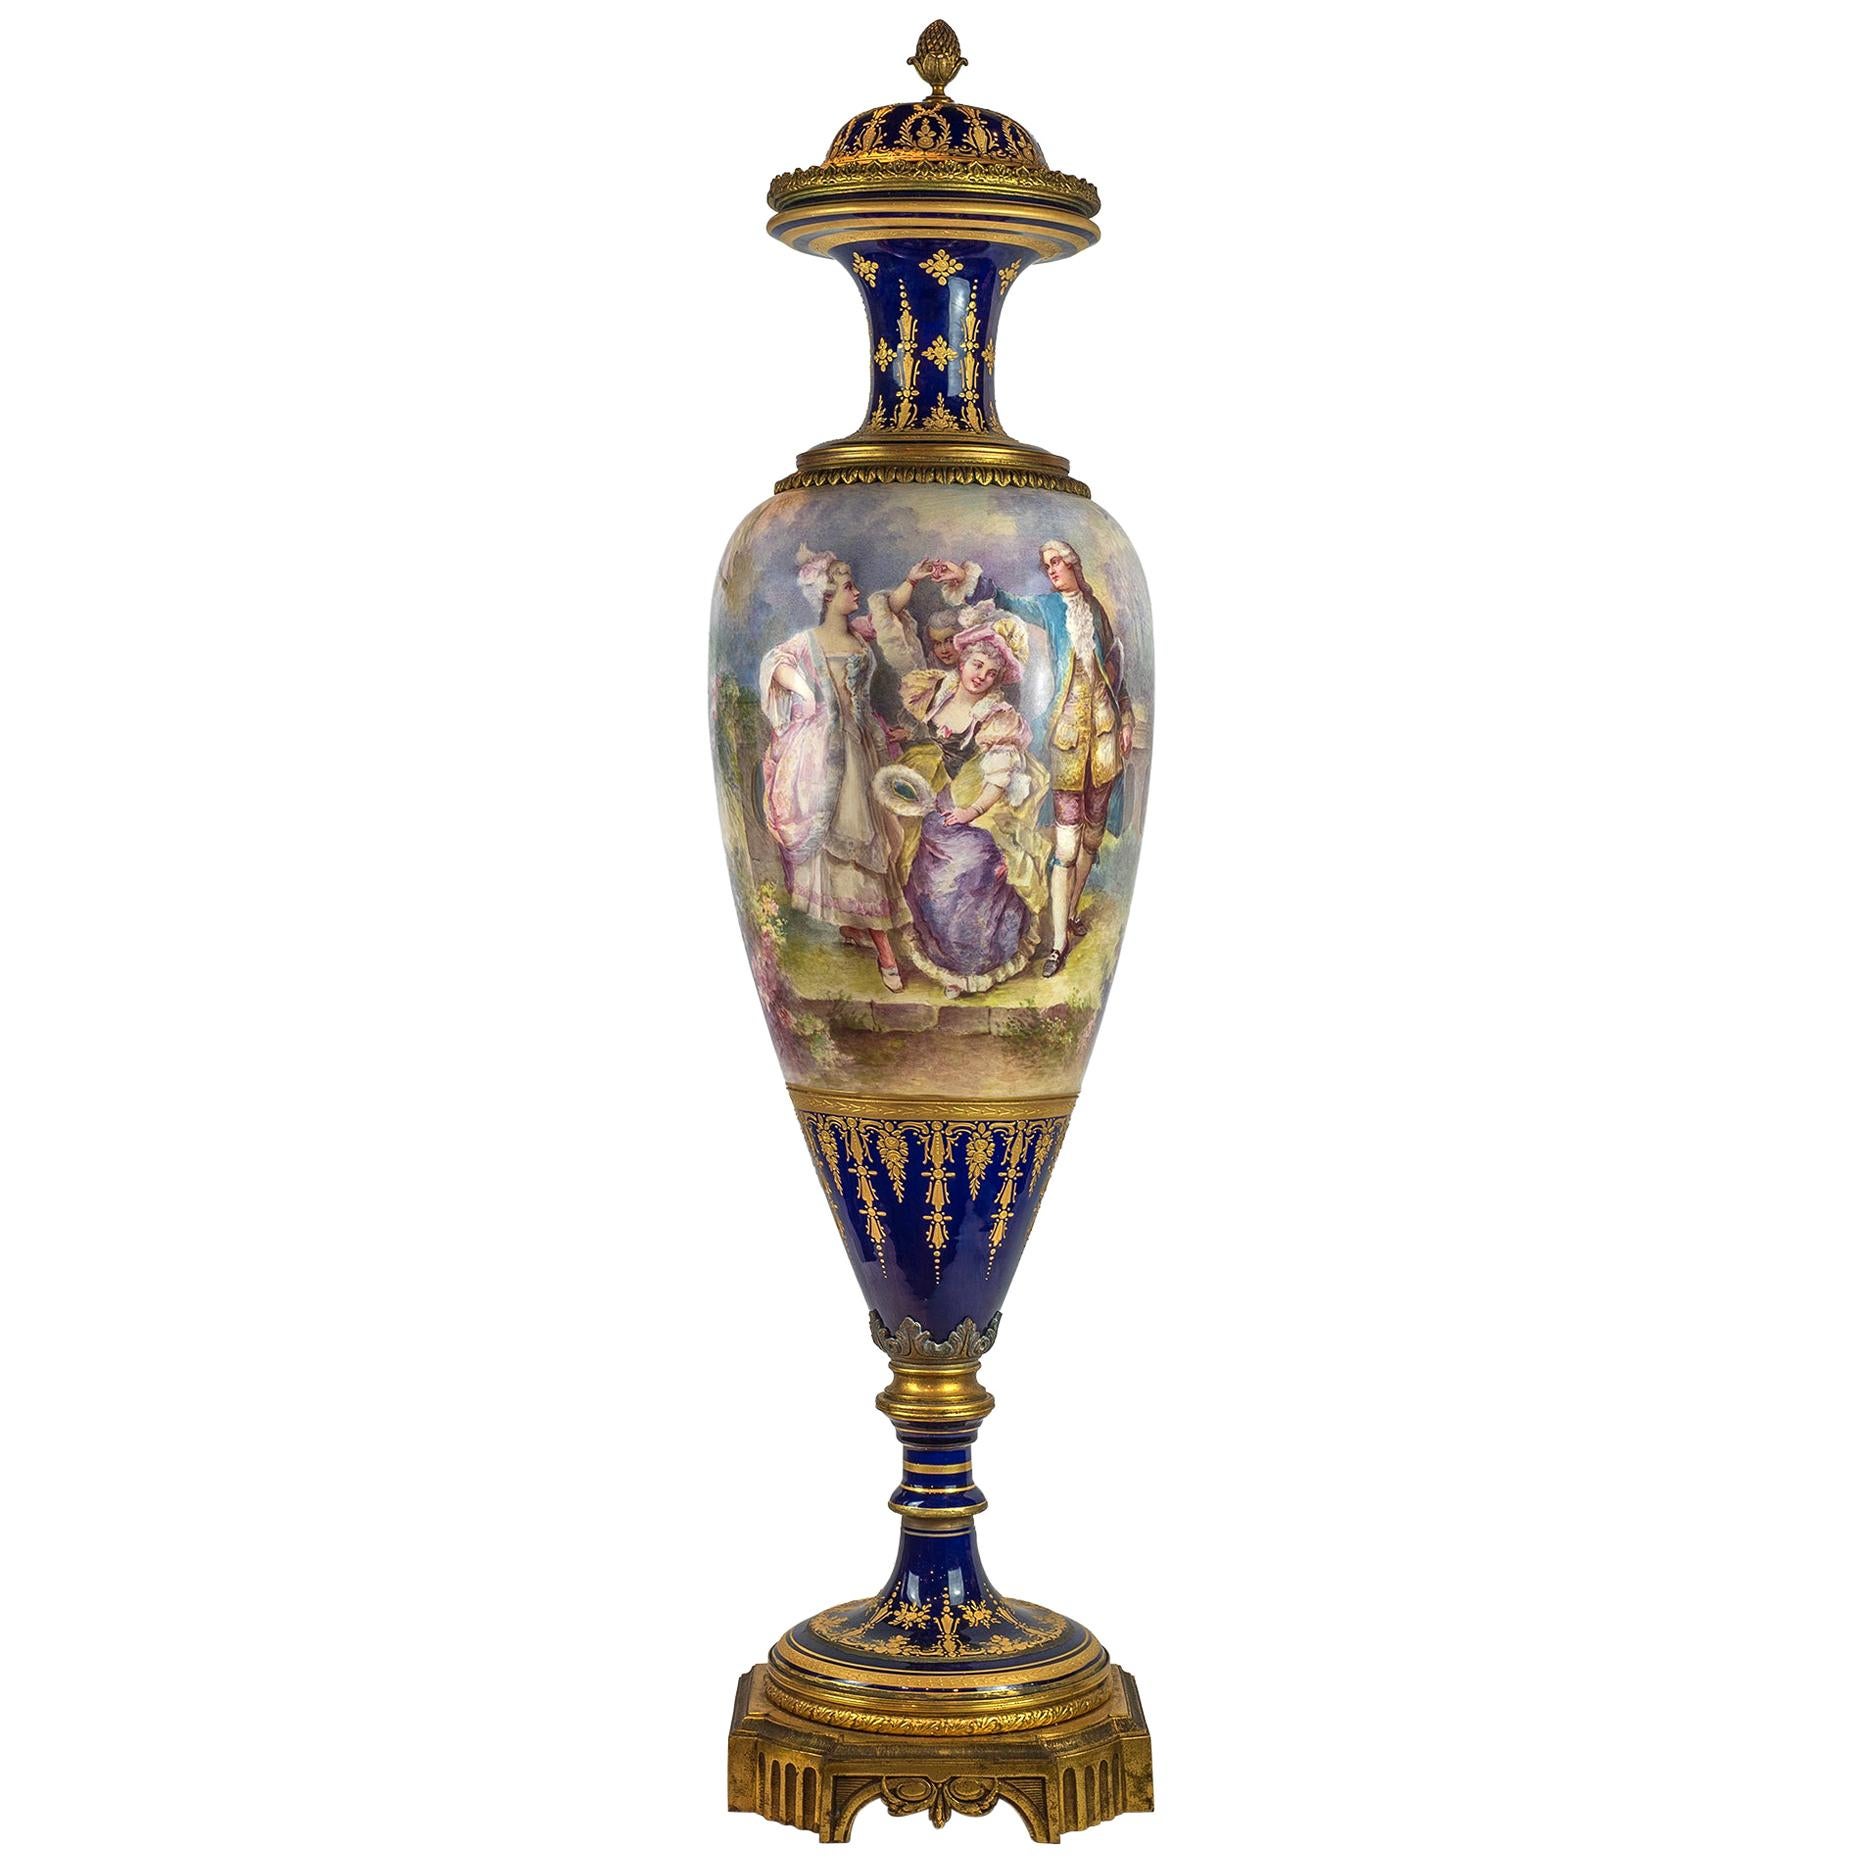 Gran jarrón de porcelana azul cobalto del siglo XIX, estilo Sèvres, montado en ormolu